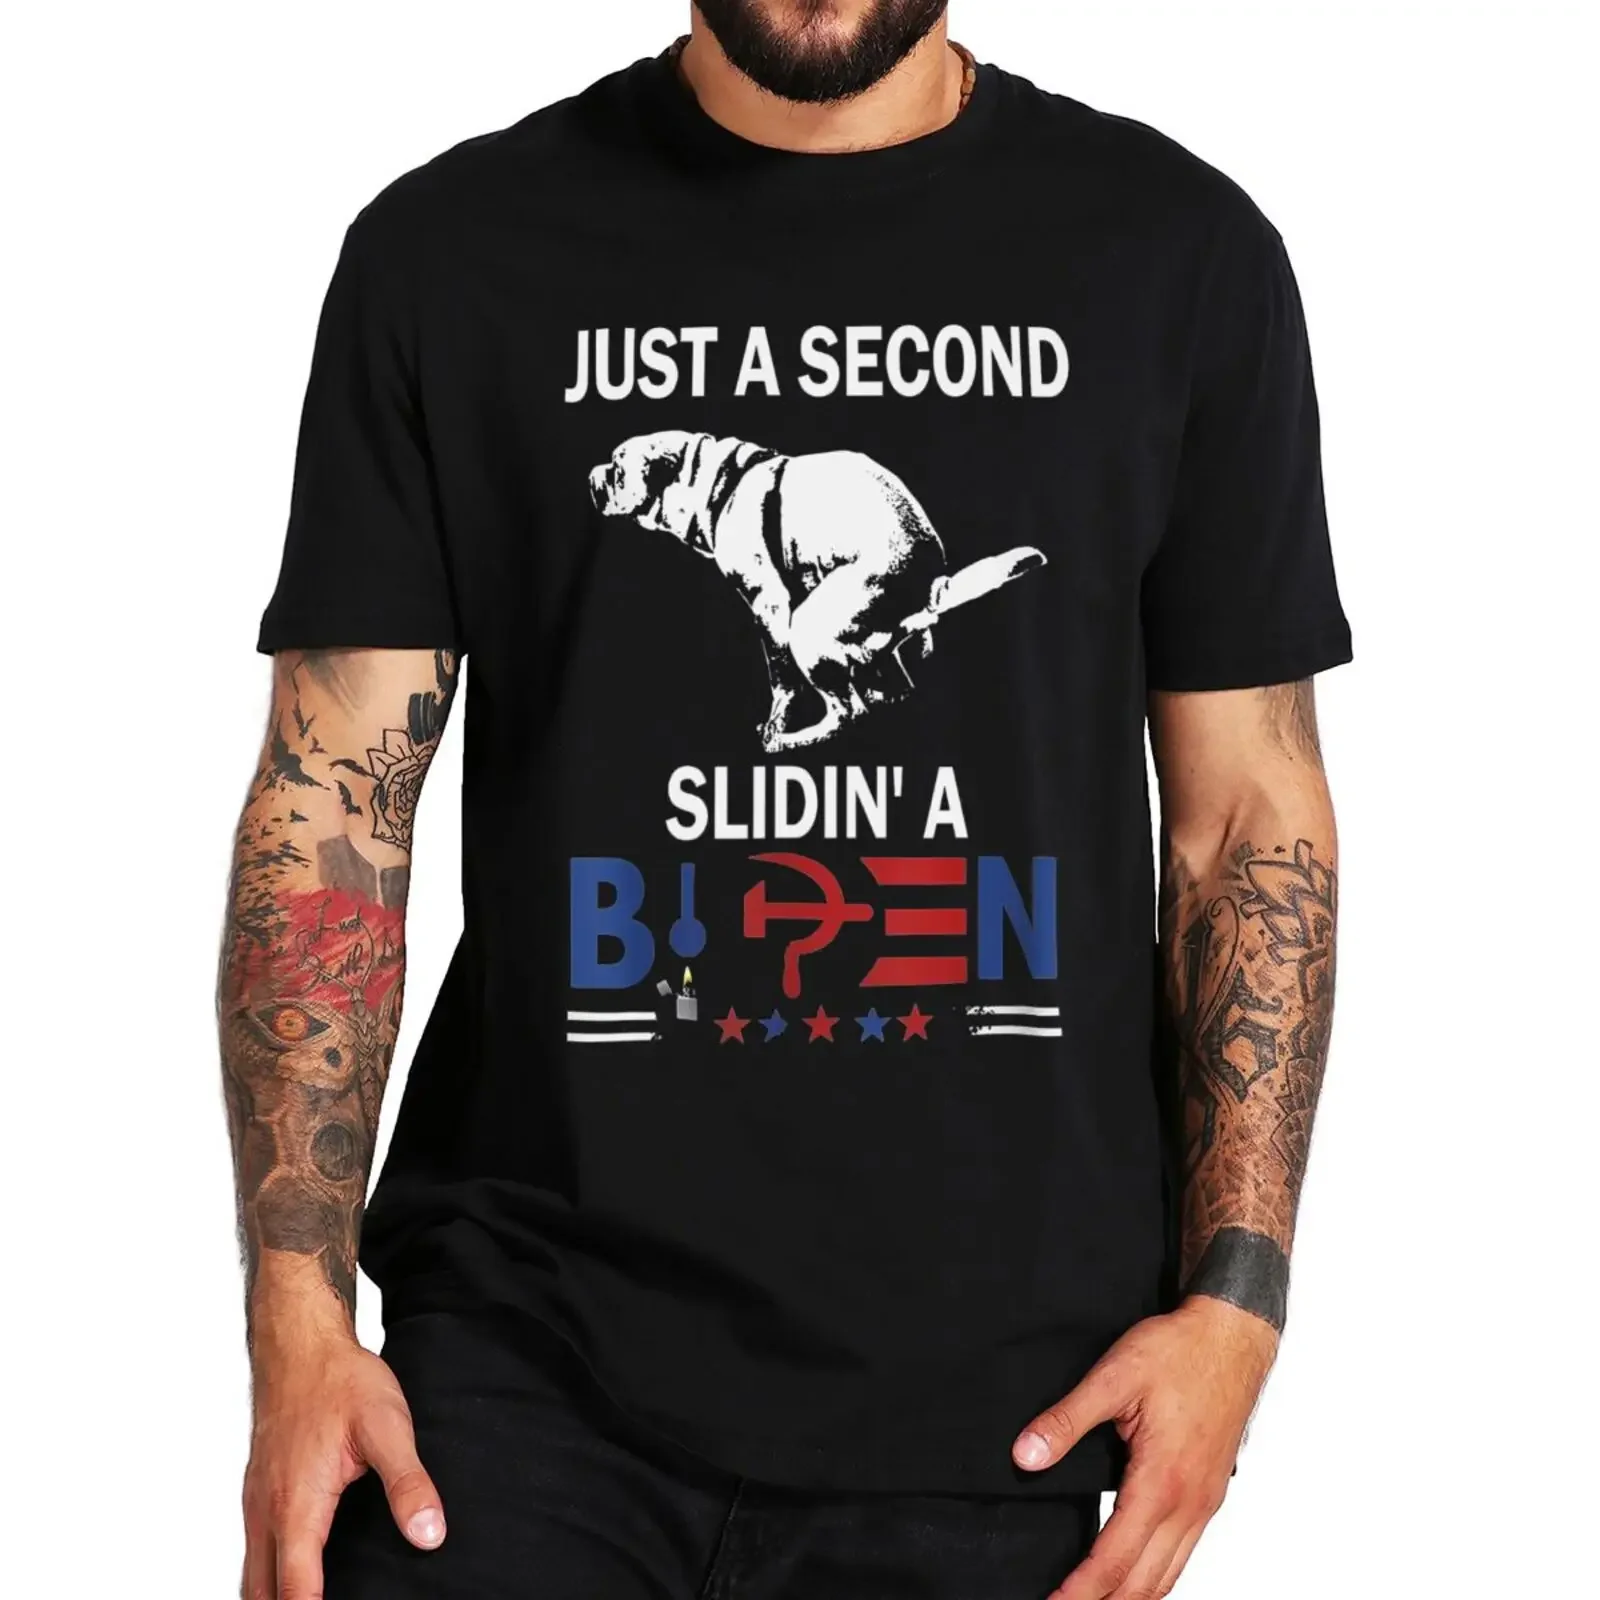 

Повседневная футболка унисекс из 100% хлопка для мужчин и женщин, футболка с надписью Just A Second Slidin' A Biden, забавная футболка Biden с позитивными мемами, топы с графическим рисунком